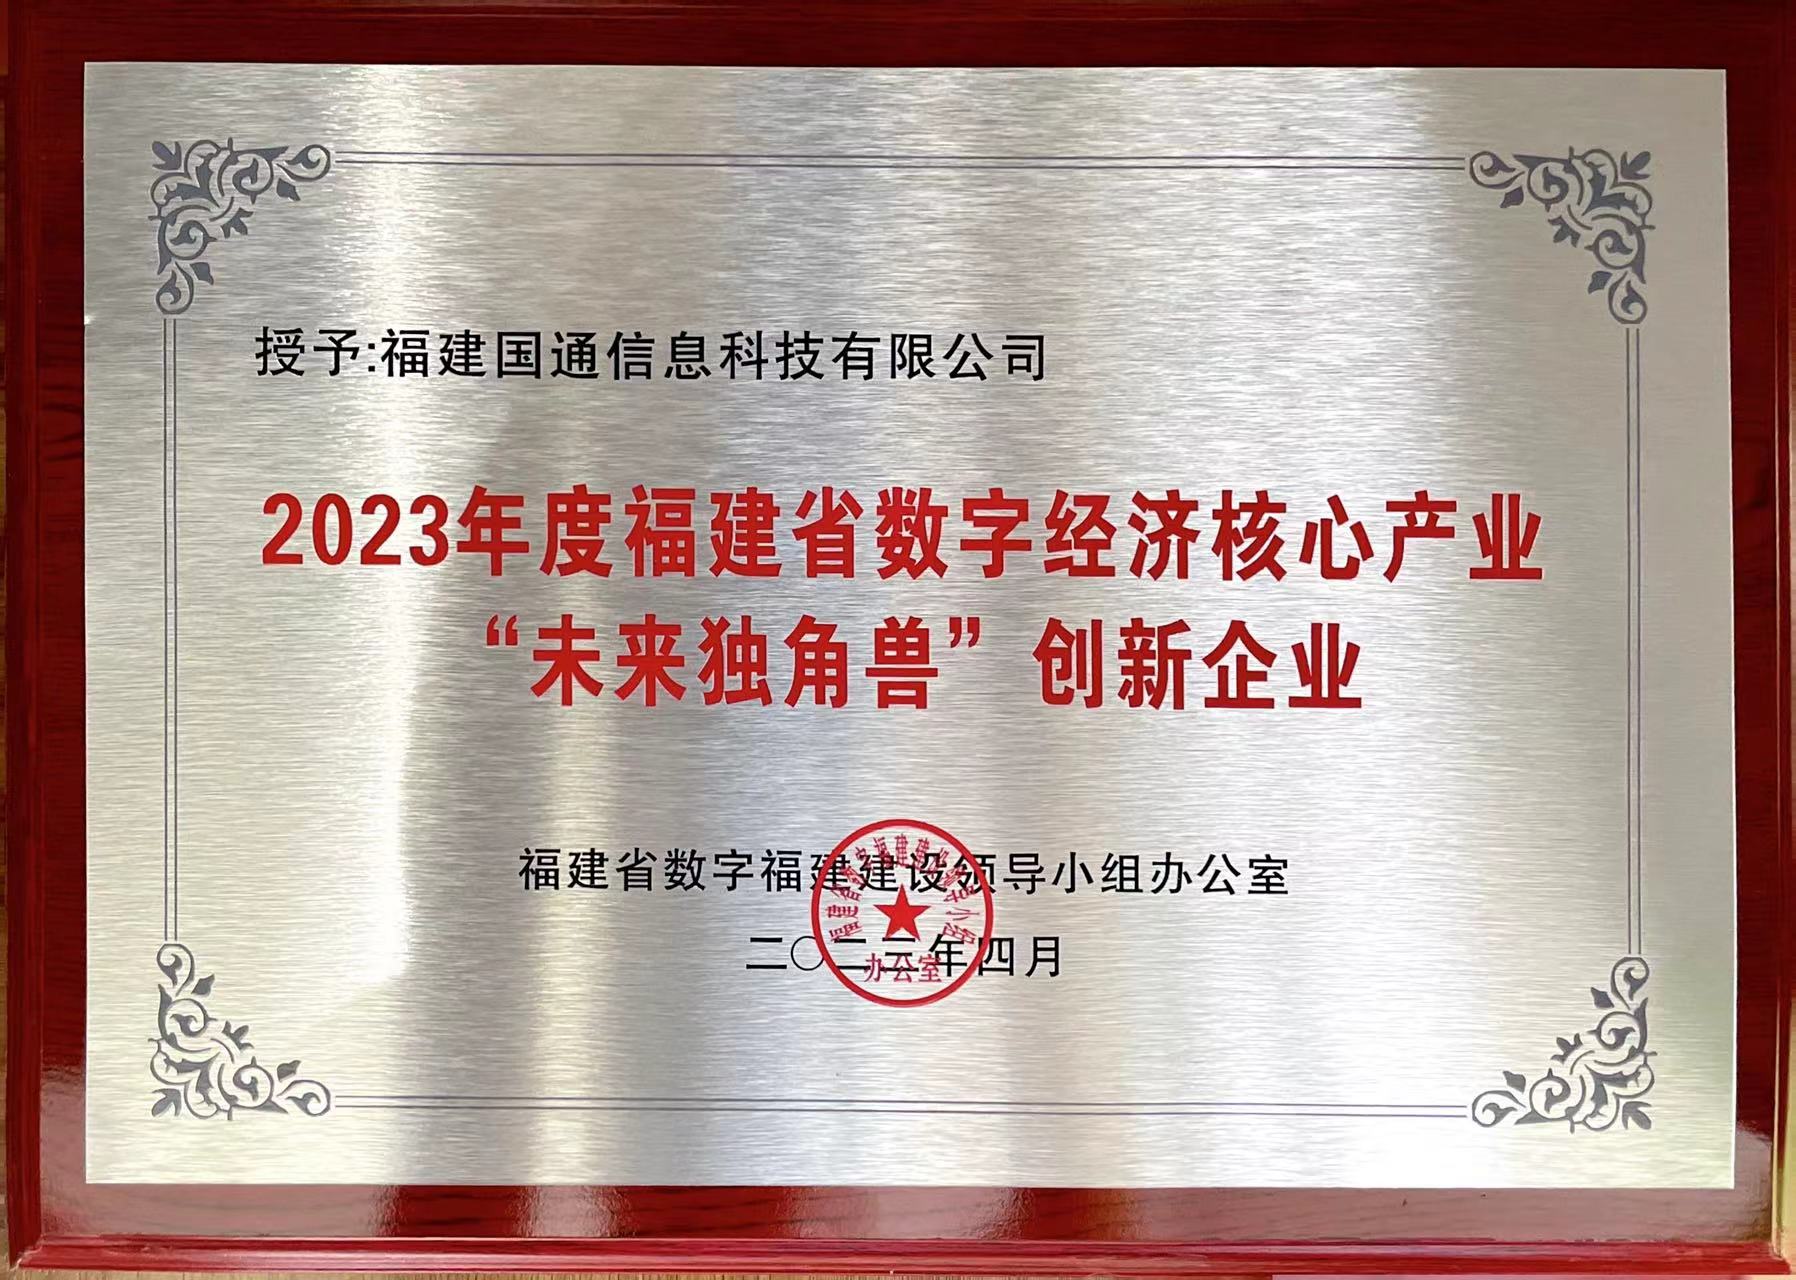 2023年度福建省數字經濟核心產業「未來獨角獸」創新企業